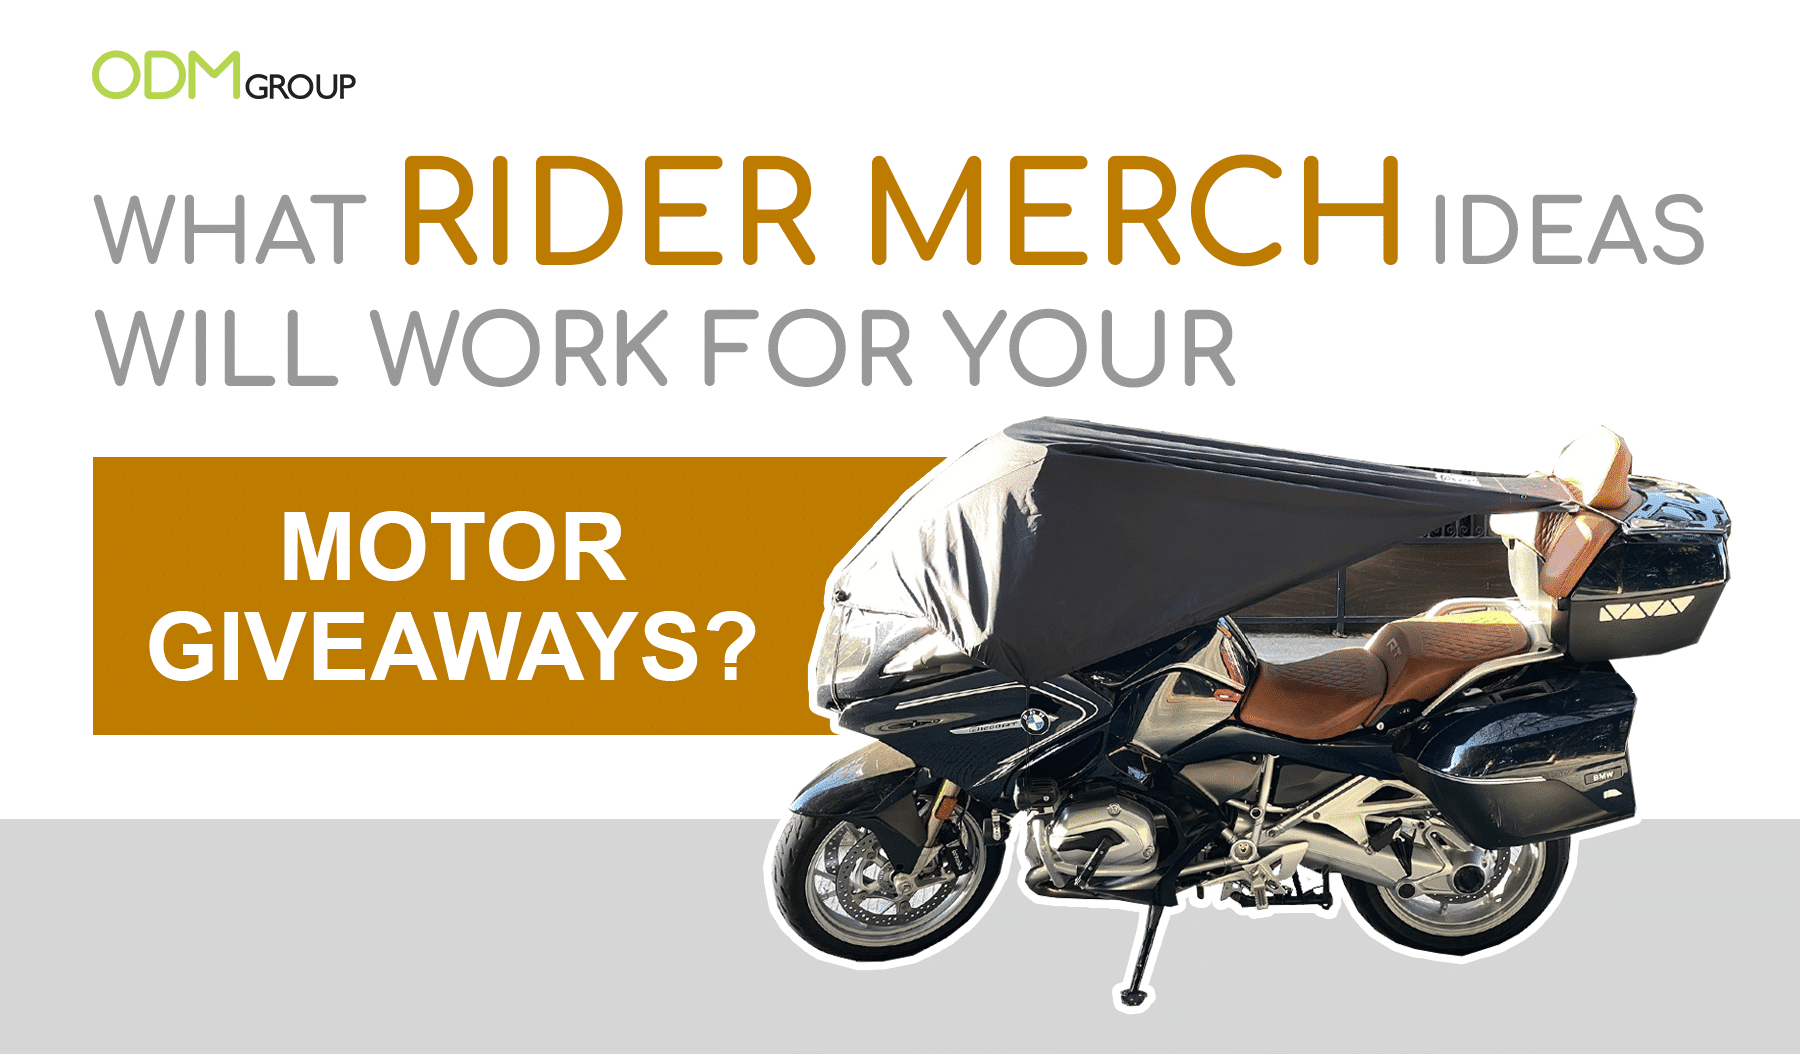 Rider Merchandise Ideas